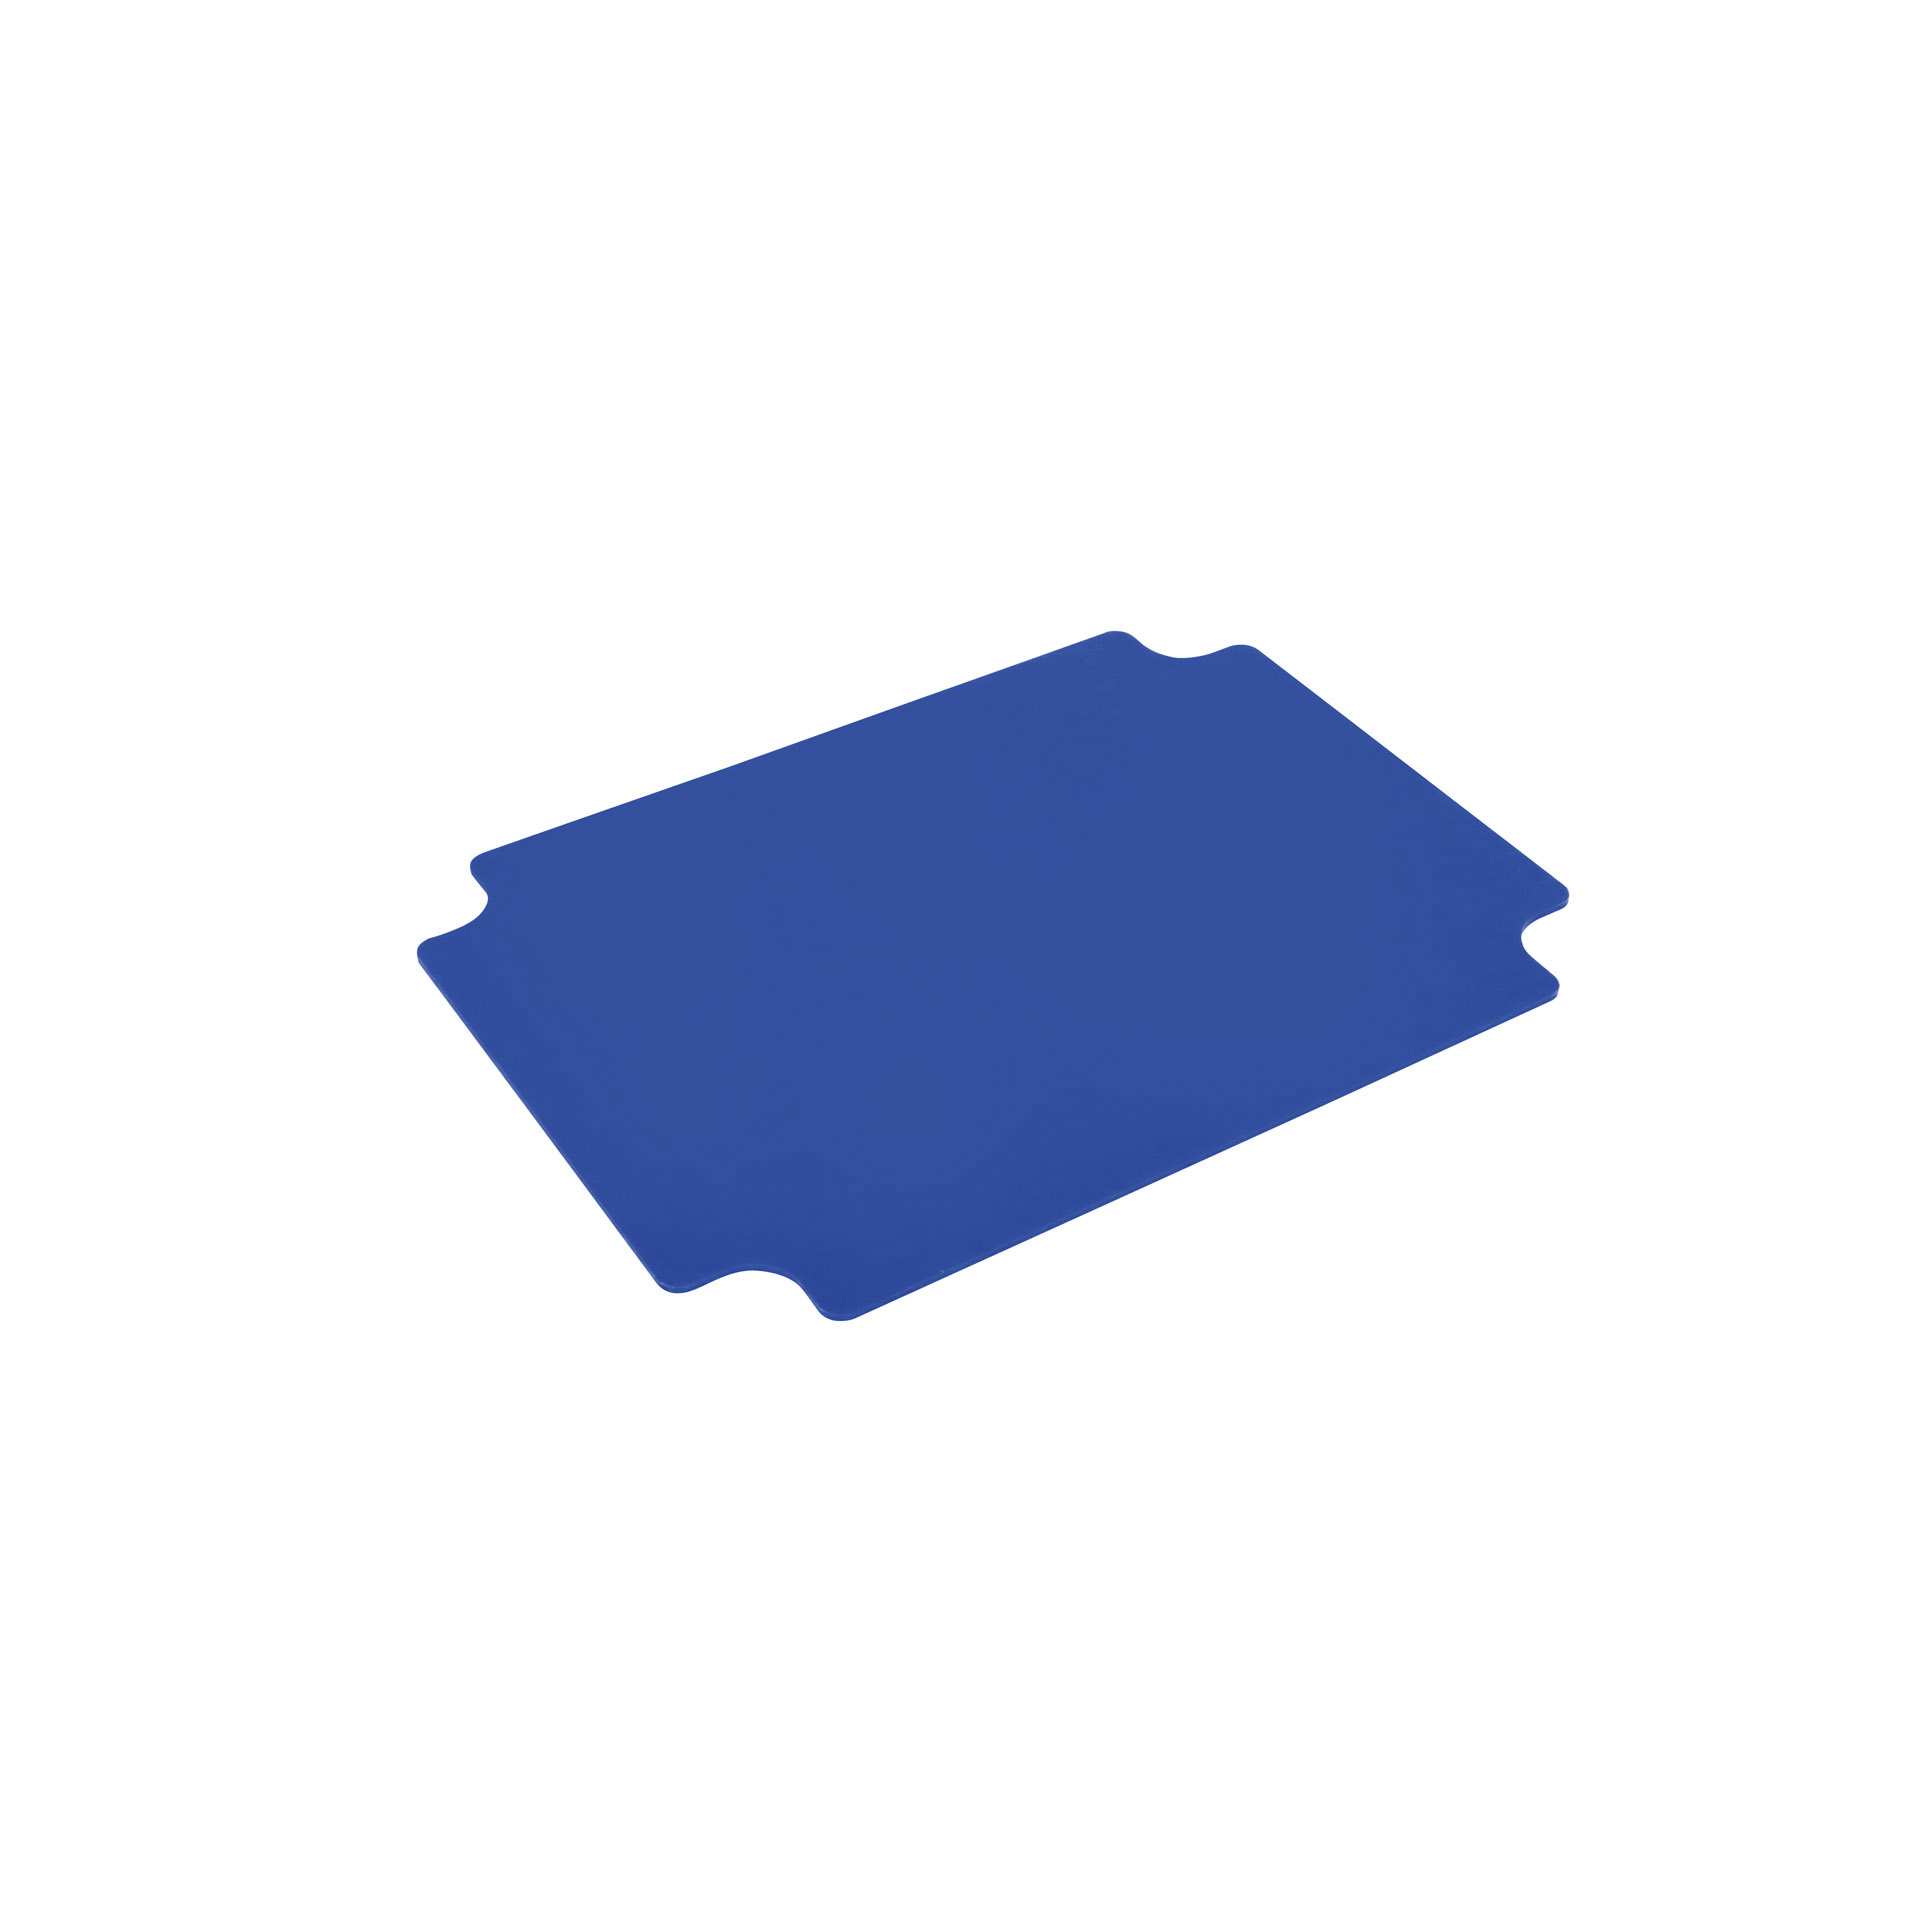 Ersatz-Schneidebrett - Set á 6 Stk. - blau - Abm. 40,0 x 30,0 x 0,3 cm - HE-PE - 228355-C